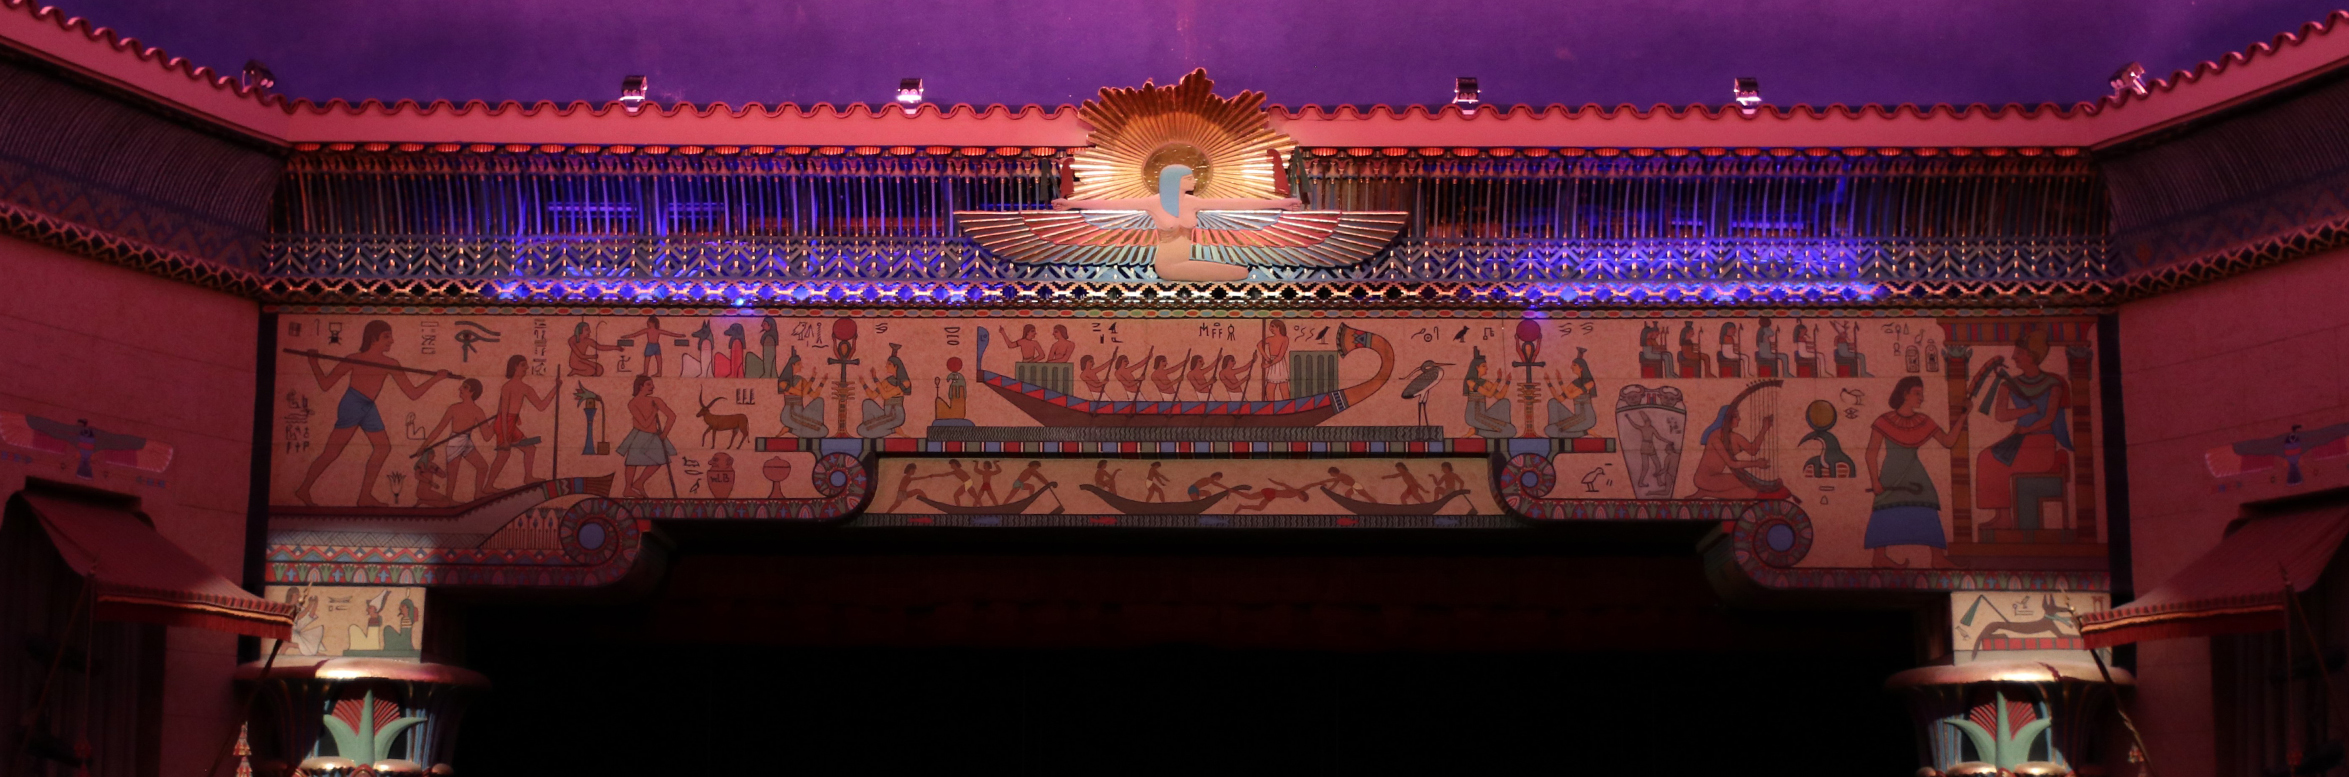 Peery's Egyptian Theater in Ogden, Utah banner final